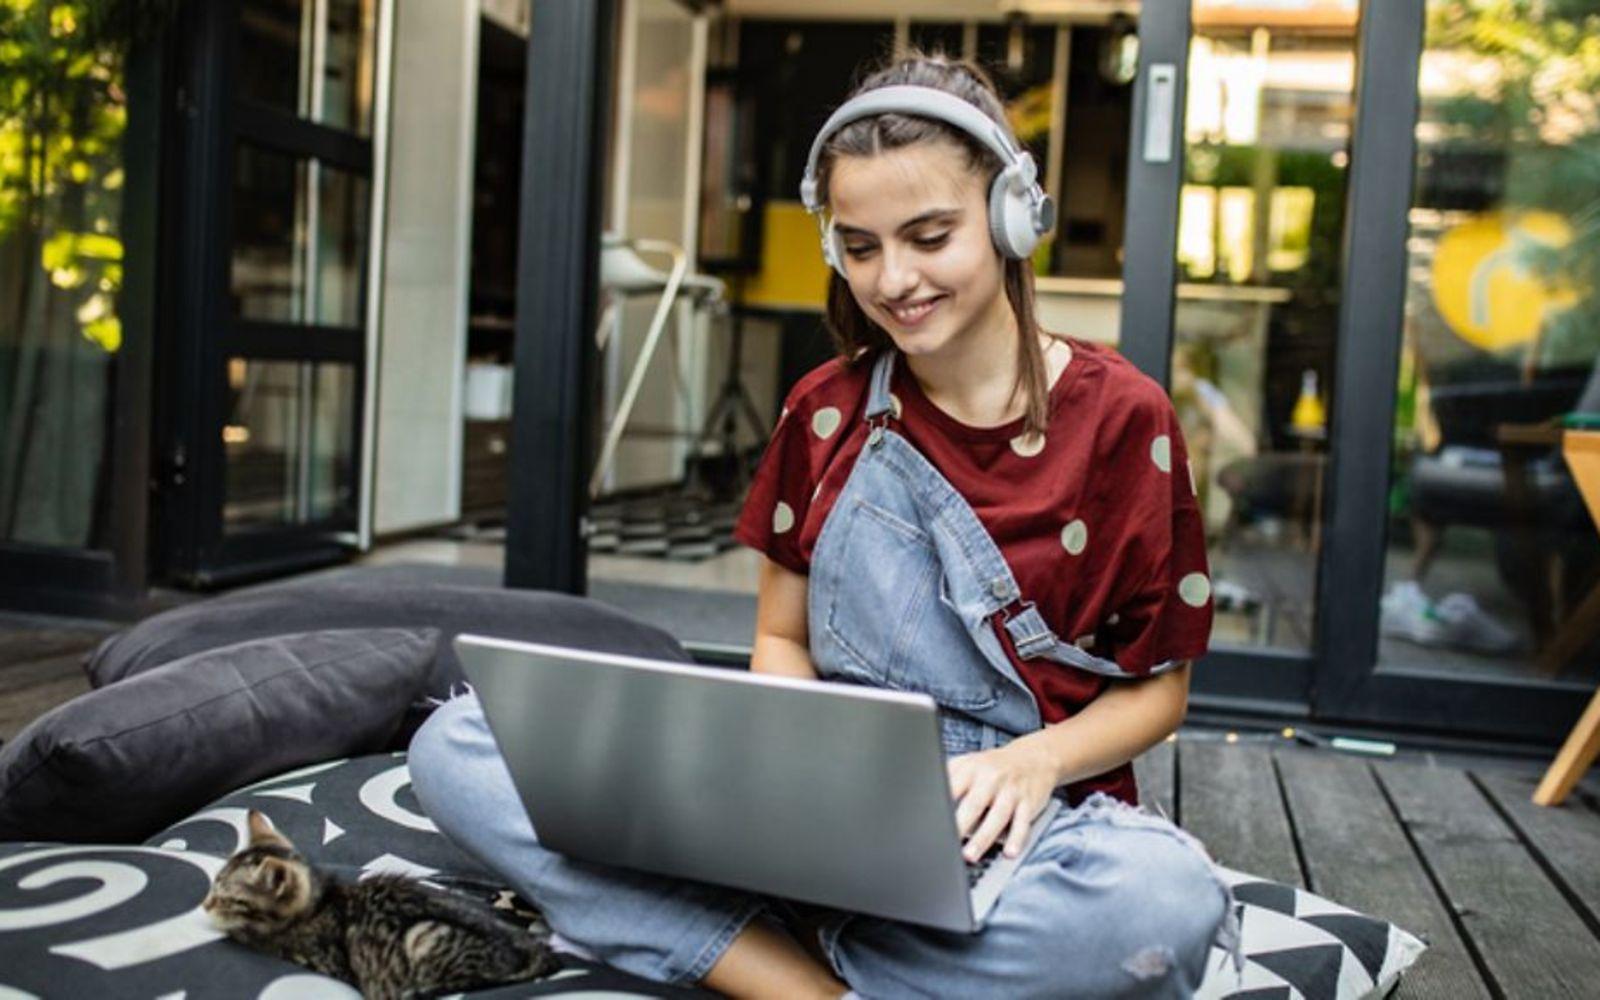 Symboldbild für Online-Shopping: Ein Teenager-Mädchen sitzt vorm Computer und shoppt online